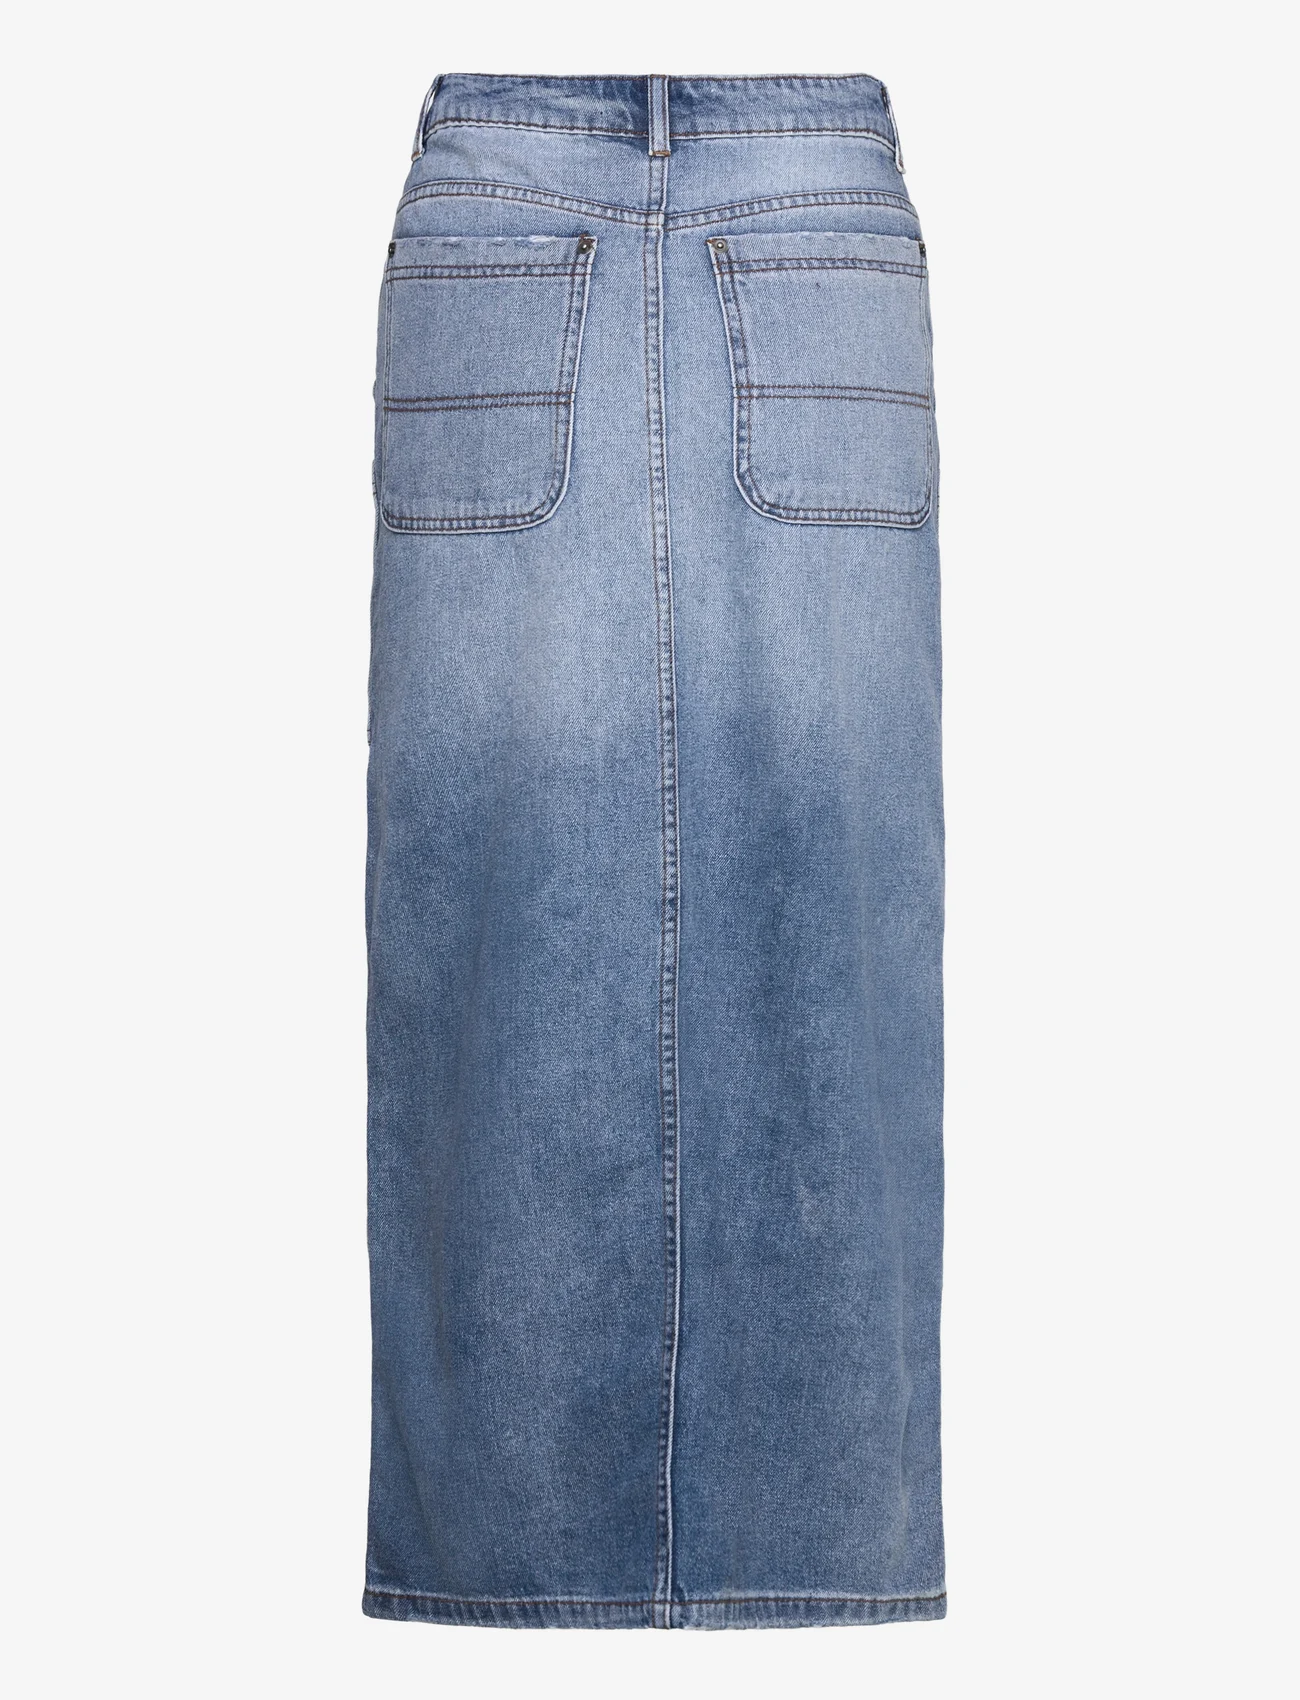 Sofie Schnoor - Skirt - jeanskjolar - denim blue - 1